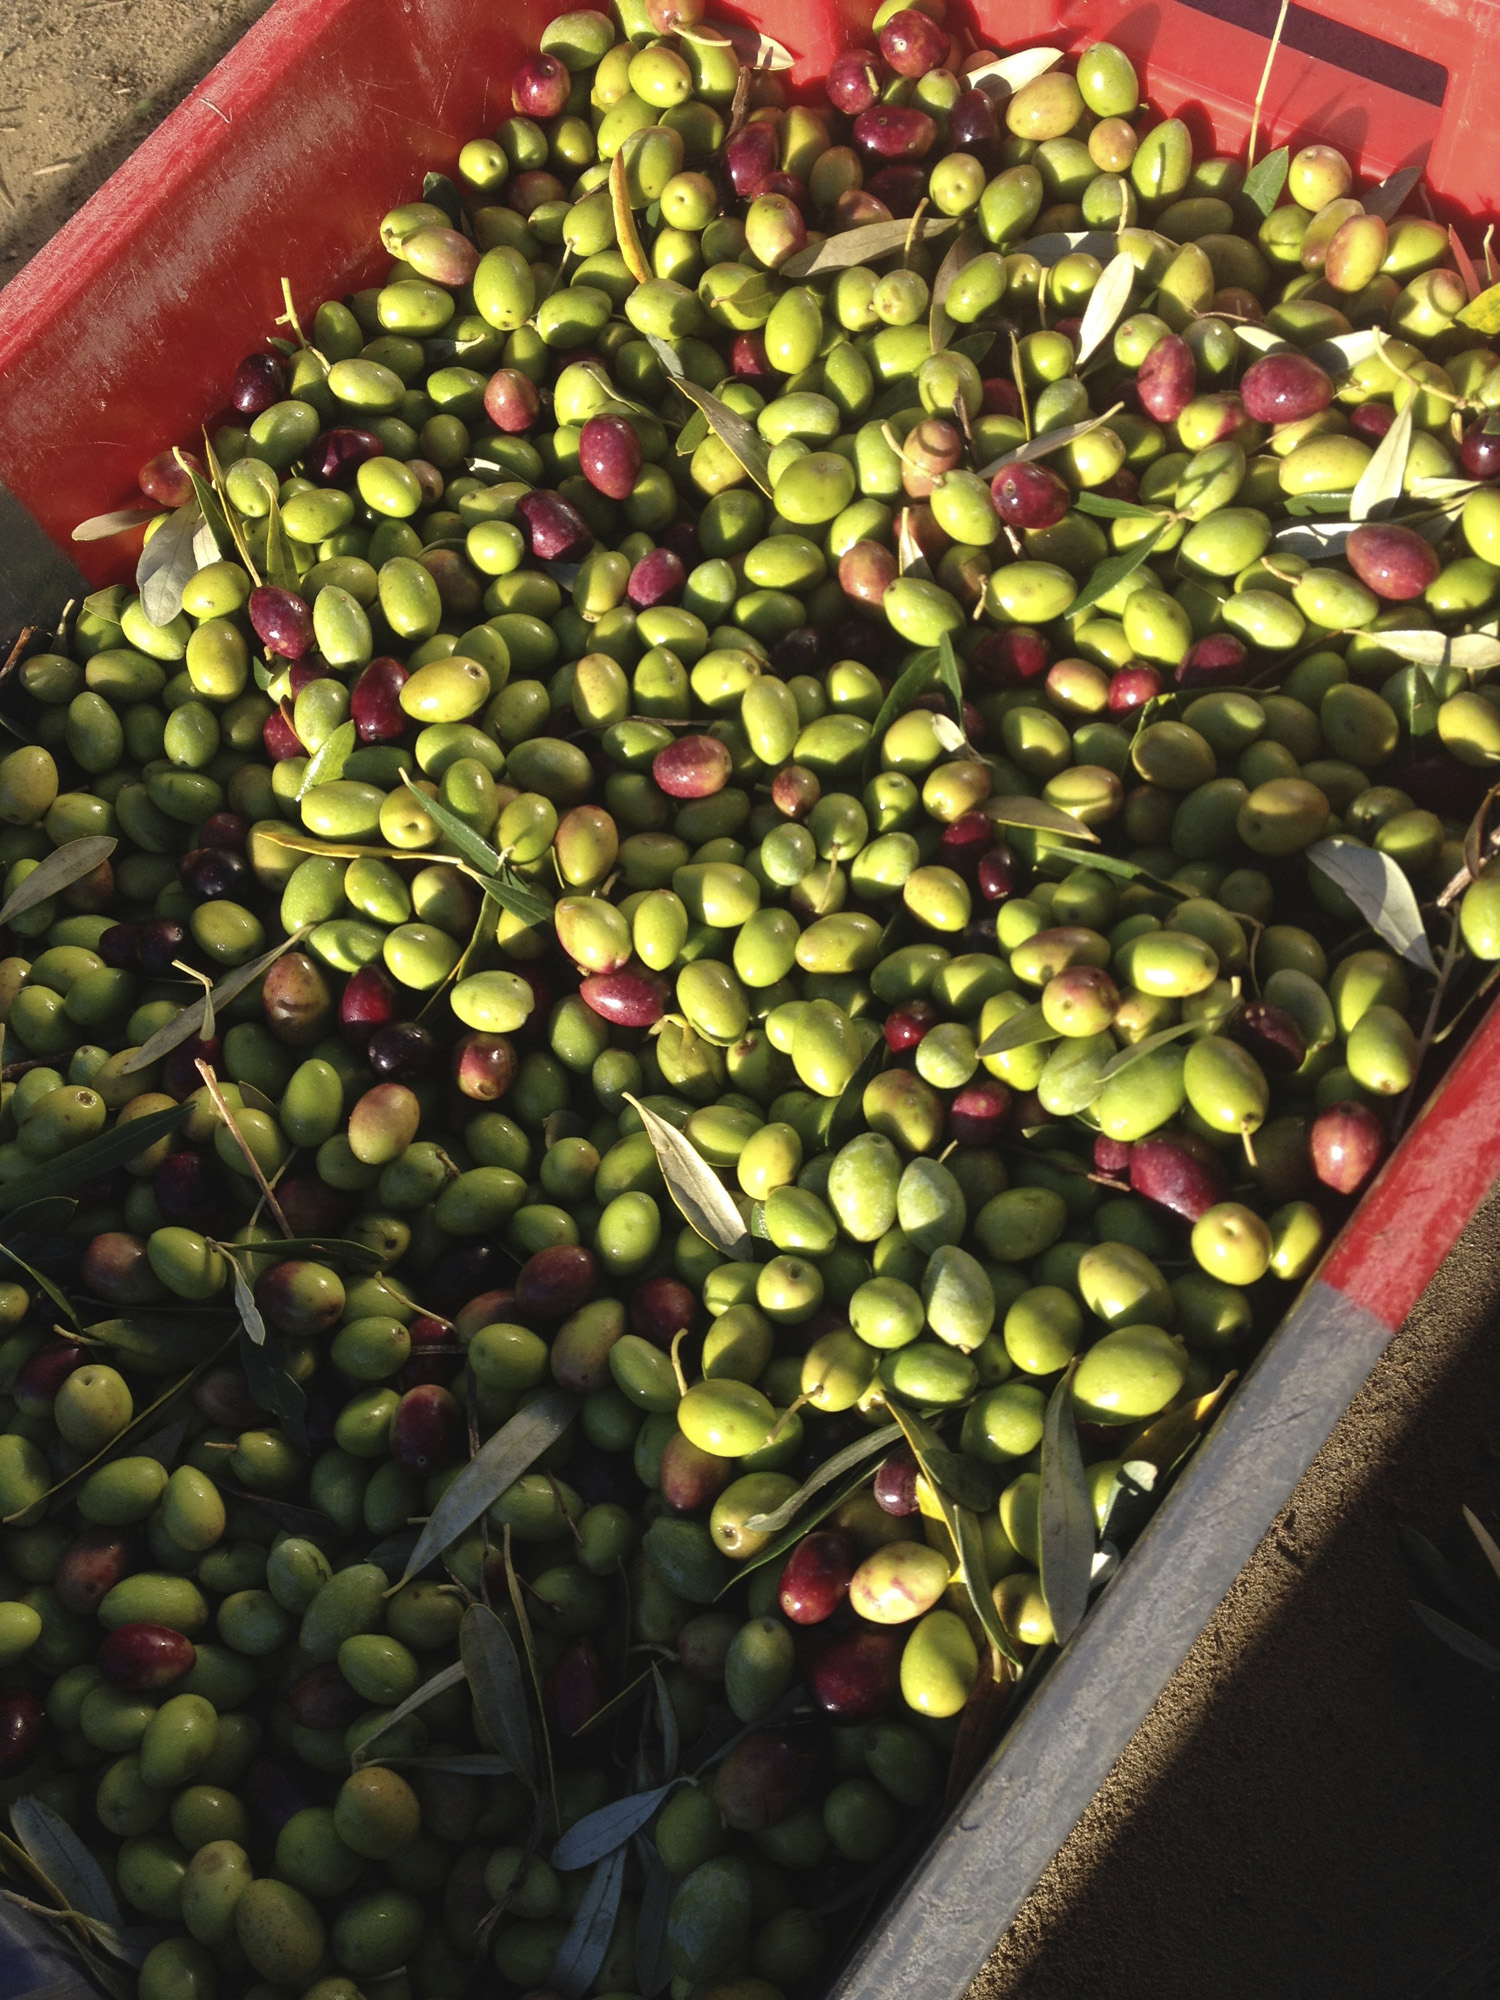 Nouveautés 2017 : le blanc en terret bourret et notre huile d’olive